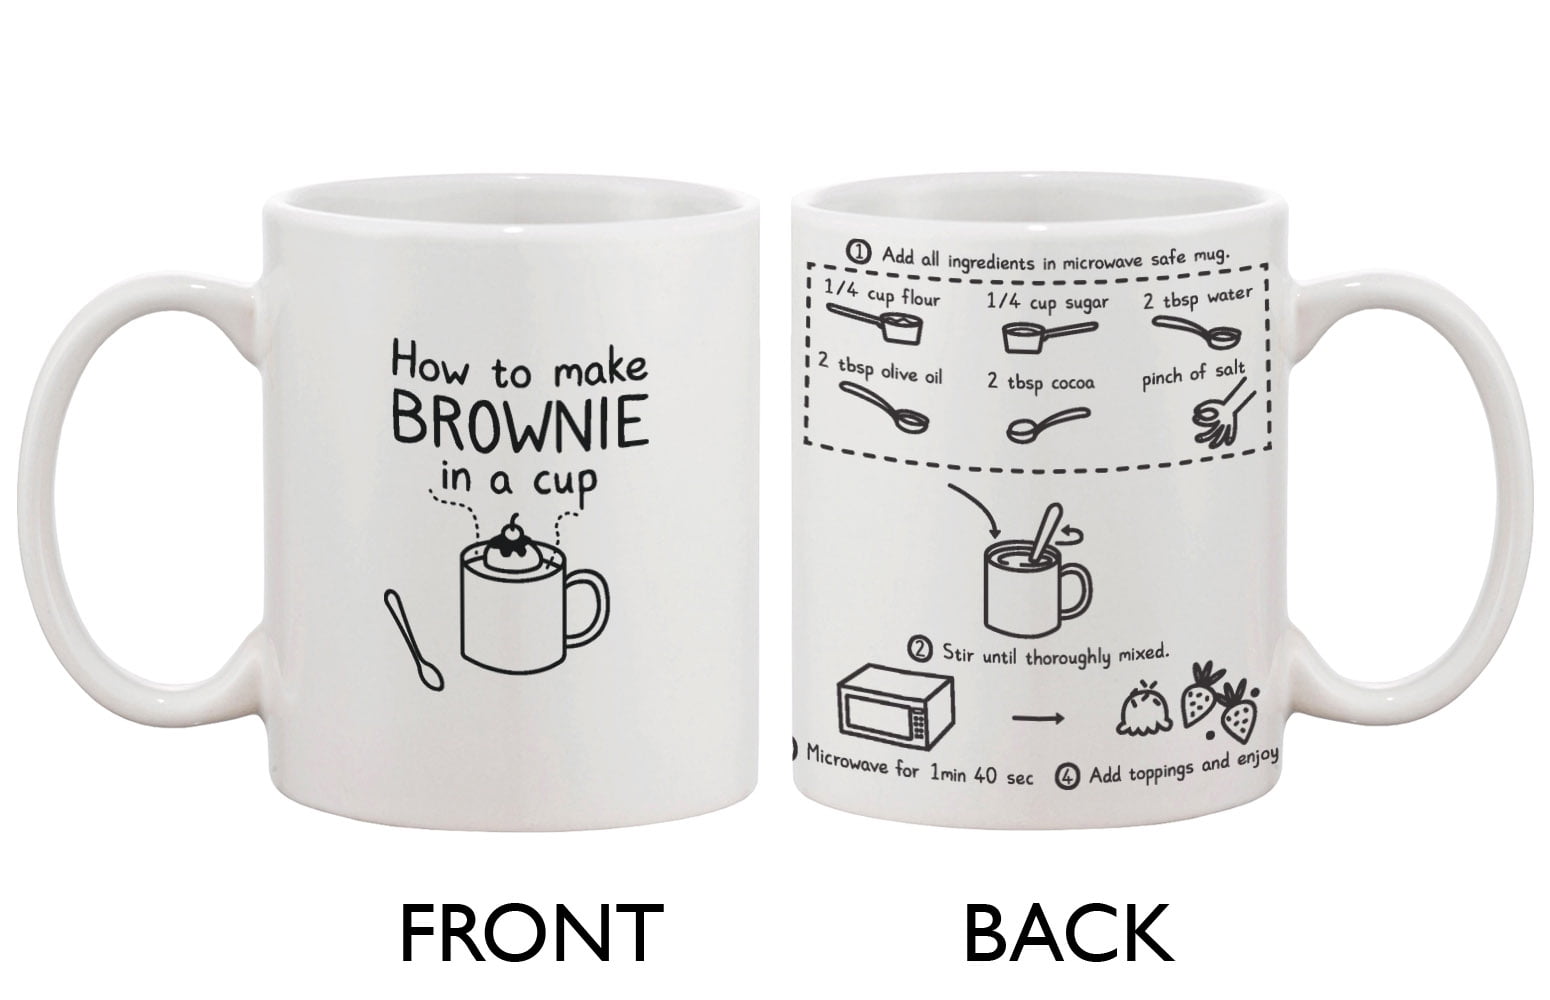 cute ceramic coffee mug - how to make brownie in a cup - cute recipe